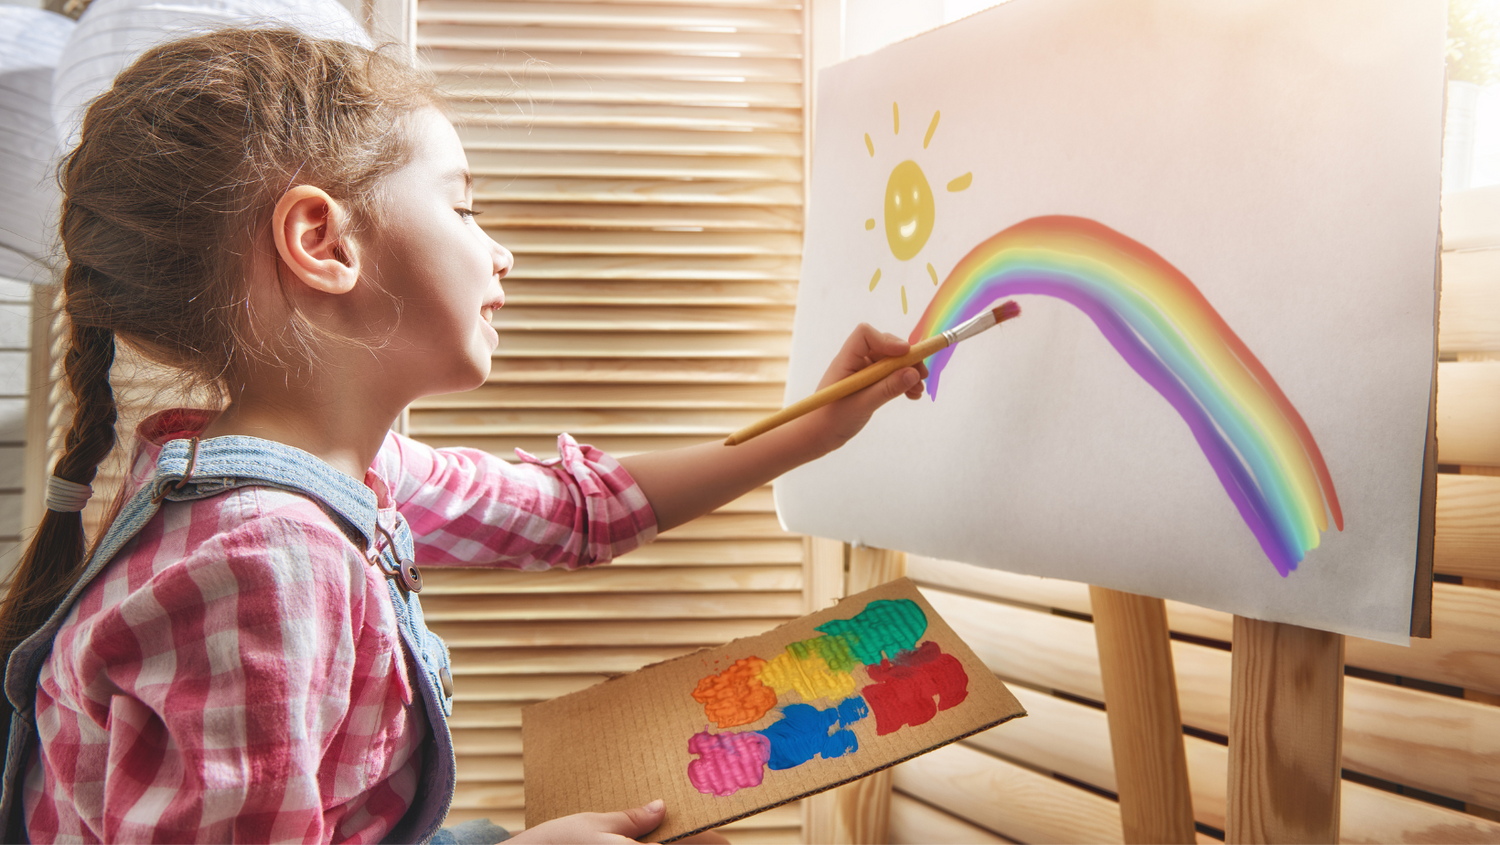 Jouet éducatif 8 ans : stimuler la créativité artistique des enfants